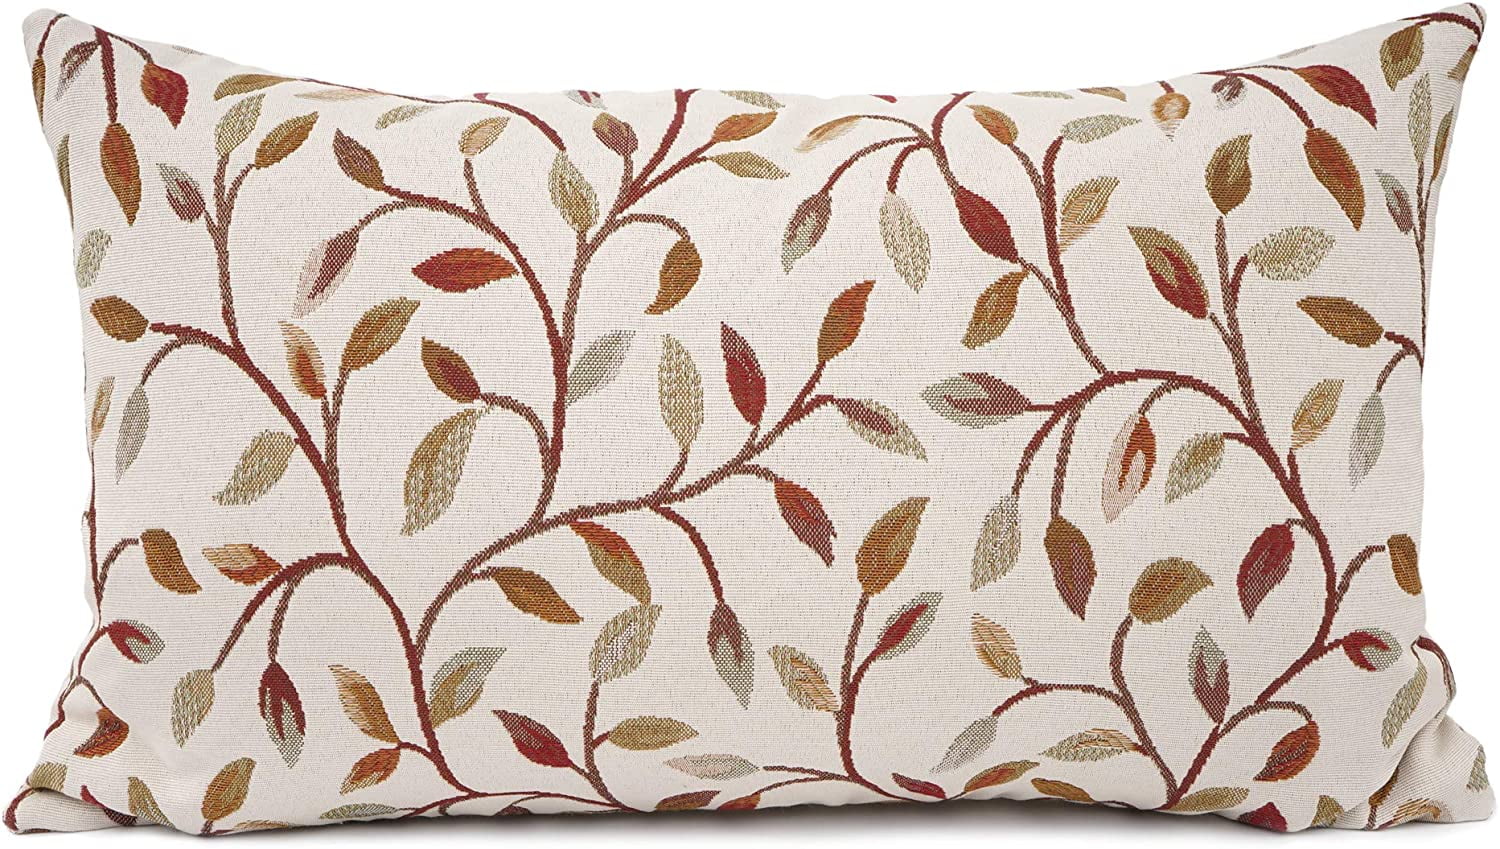 Rectangular Palm Print Cushion Cover Lumbar Throw Pillowcase Home Decor 30×50cm